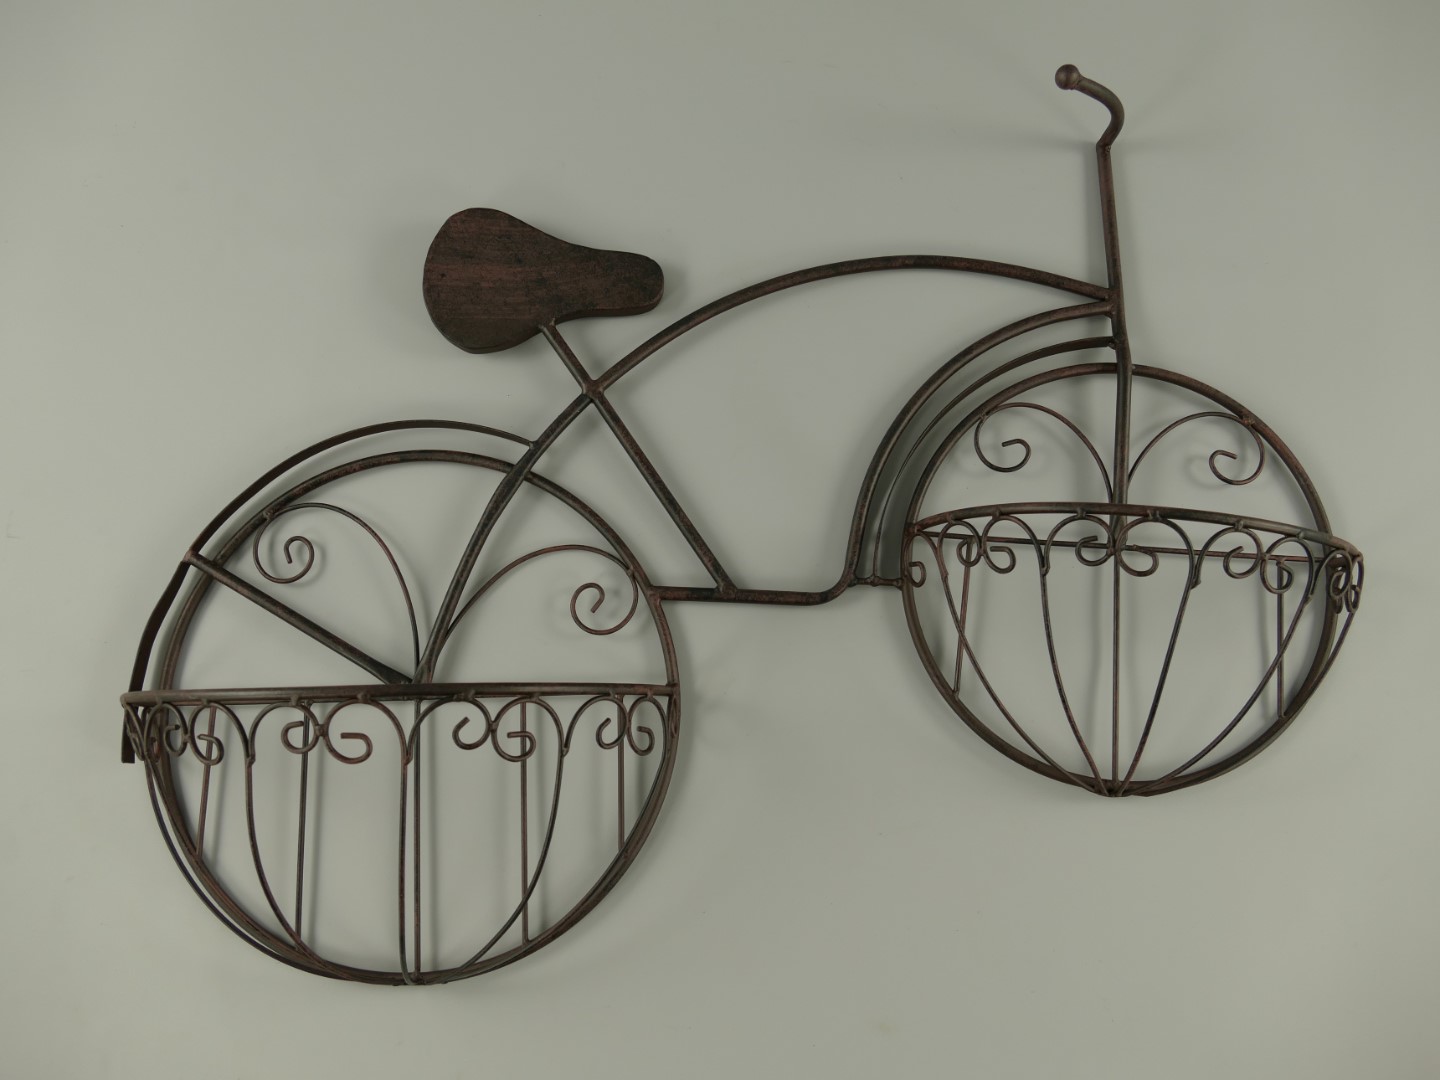 Keer terug vlinder huiswerk Metalen plantenbak model fiets bruin - Helene Livingstyle